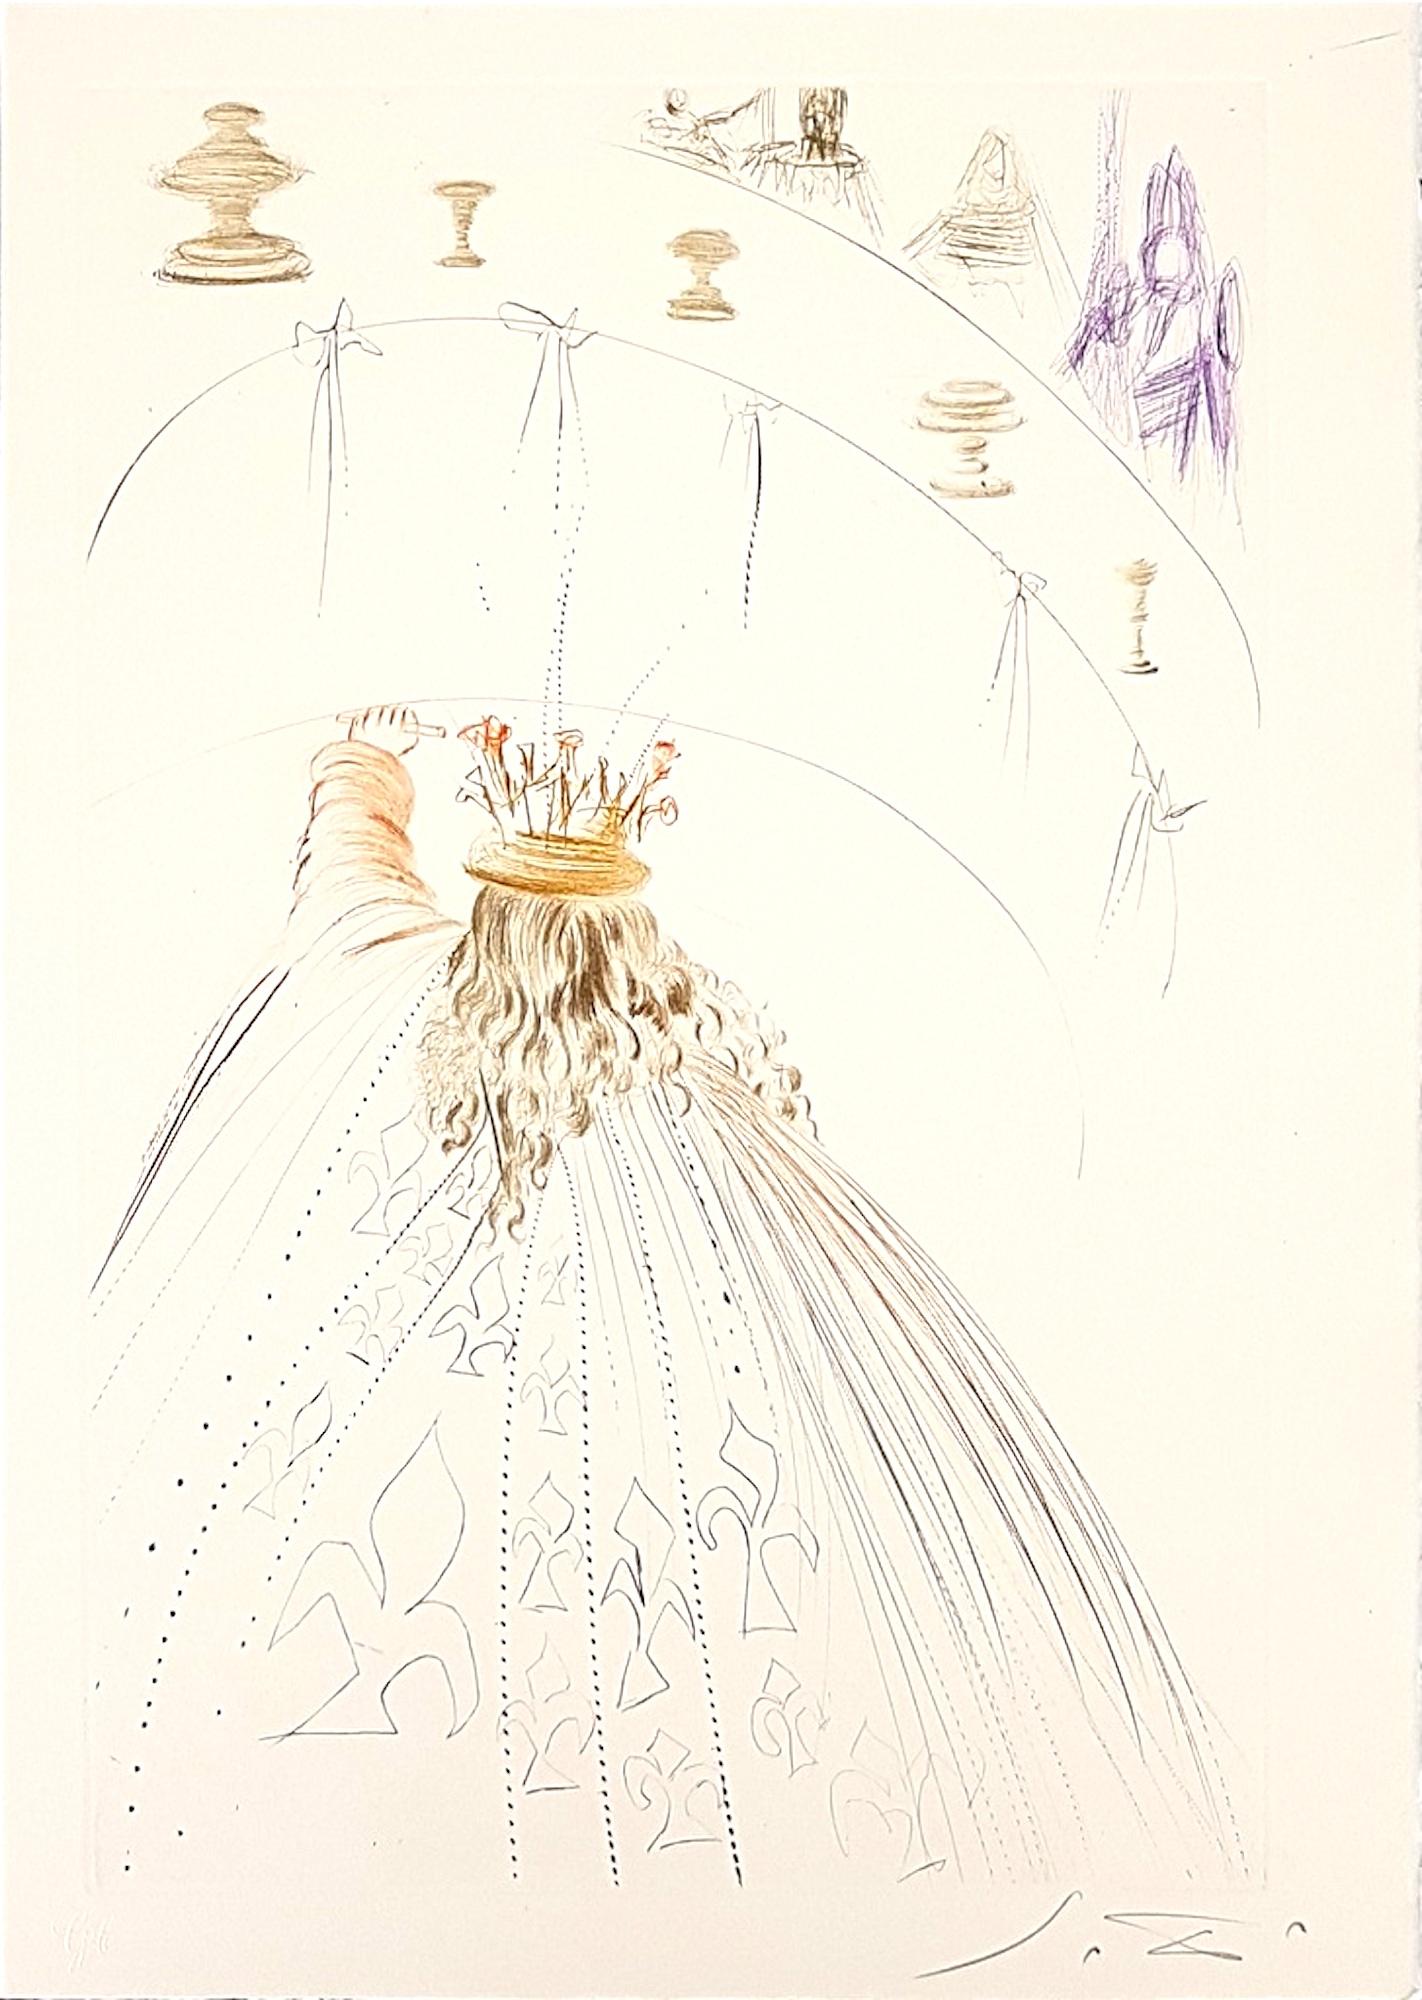 Salvador Dalí Print - Les Chevaliers du Roi Artur - Original Etching by S. Dalì - 1969